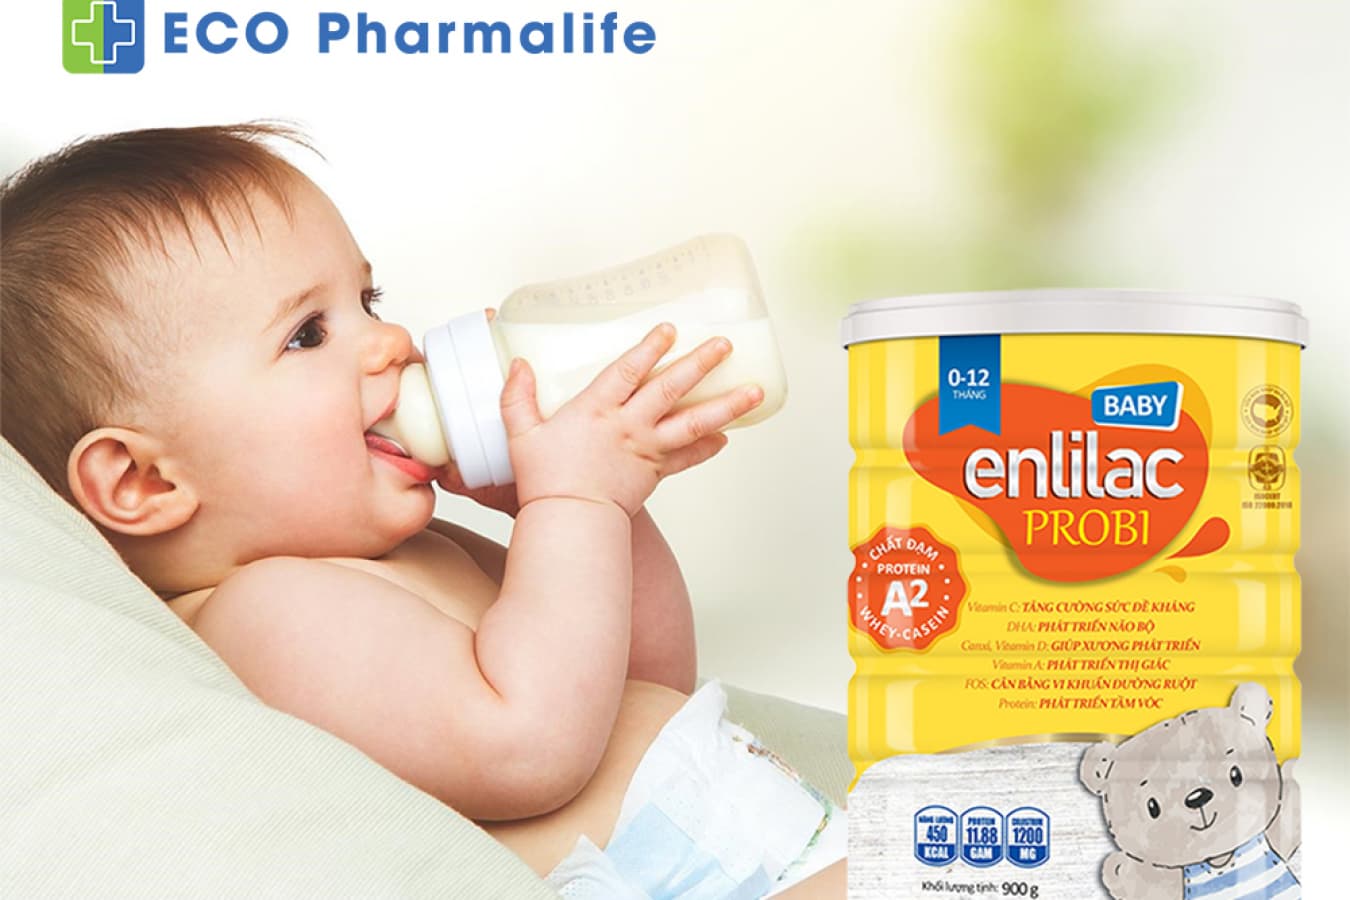 Enlilac A2 baby sữa chống táo bón cho trẻ dưới 1 tuổi hiệu quả